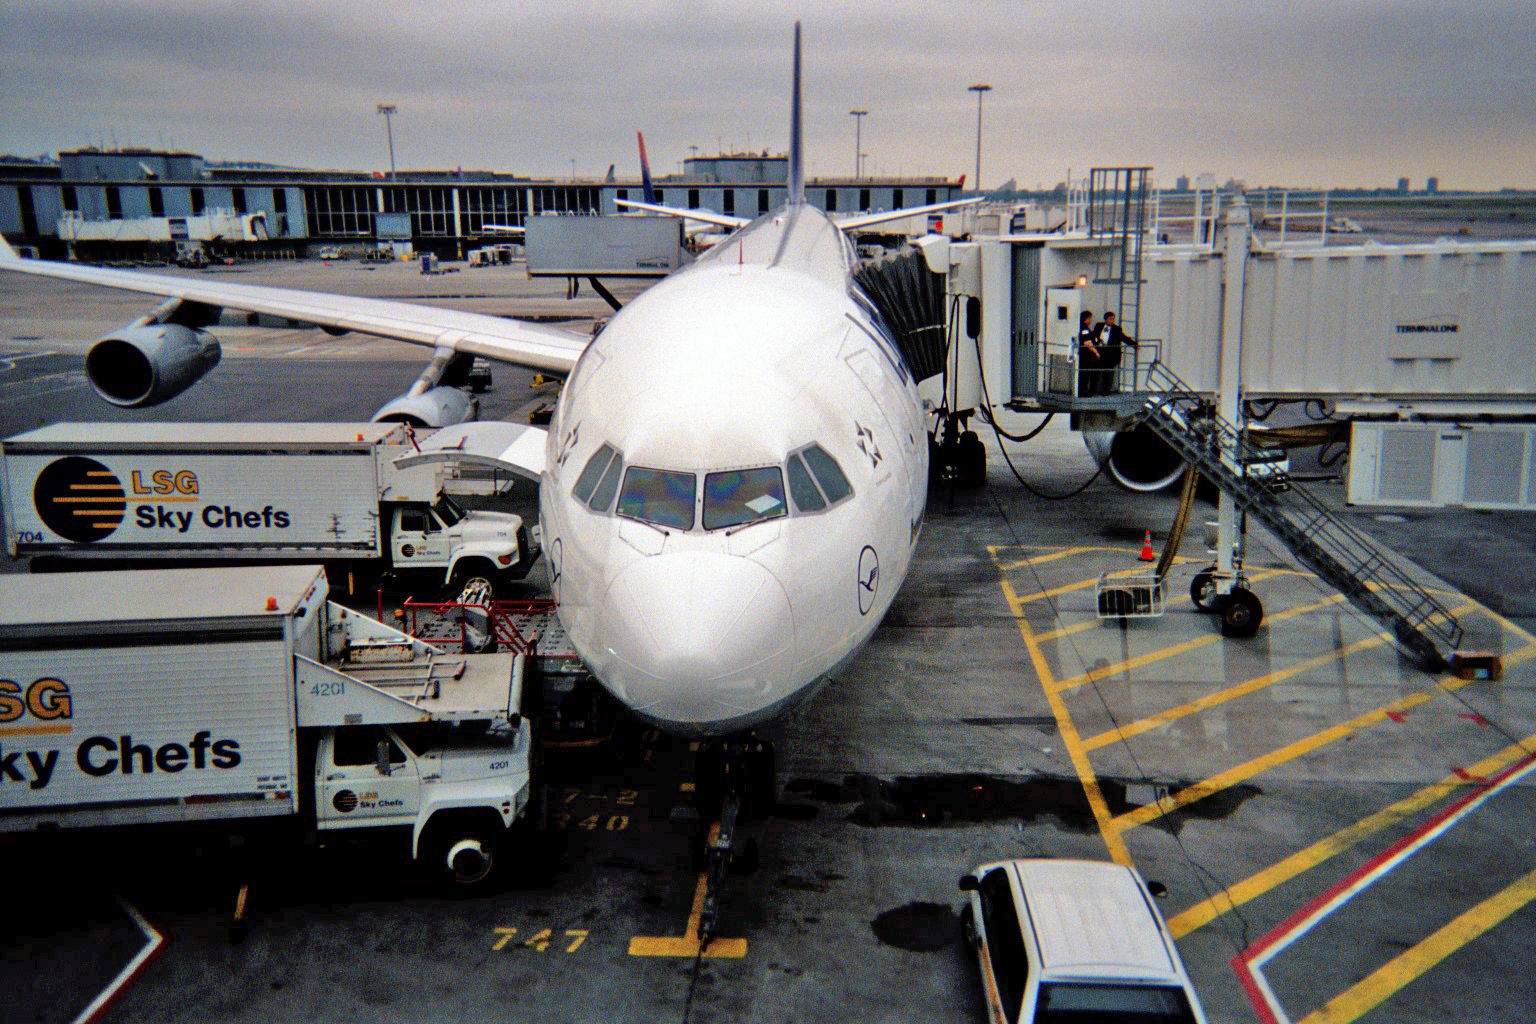 Lufthansa airbus at JFK, NY